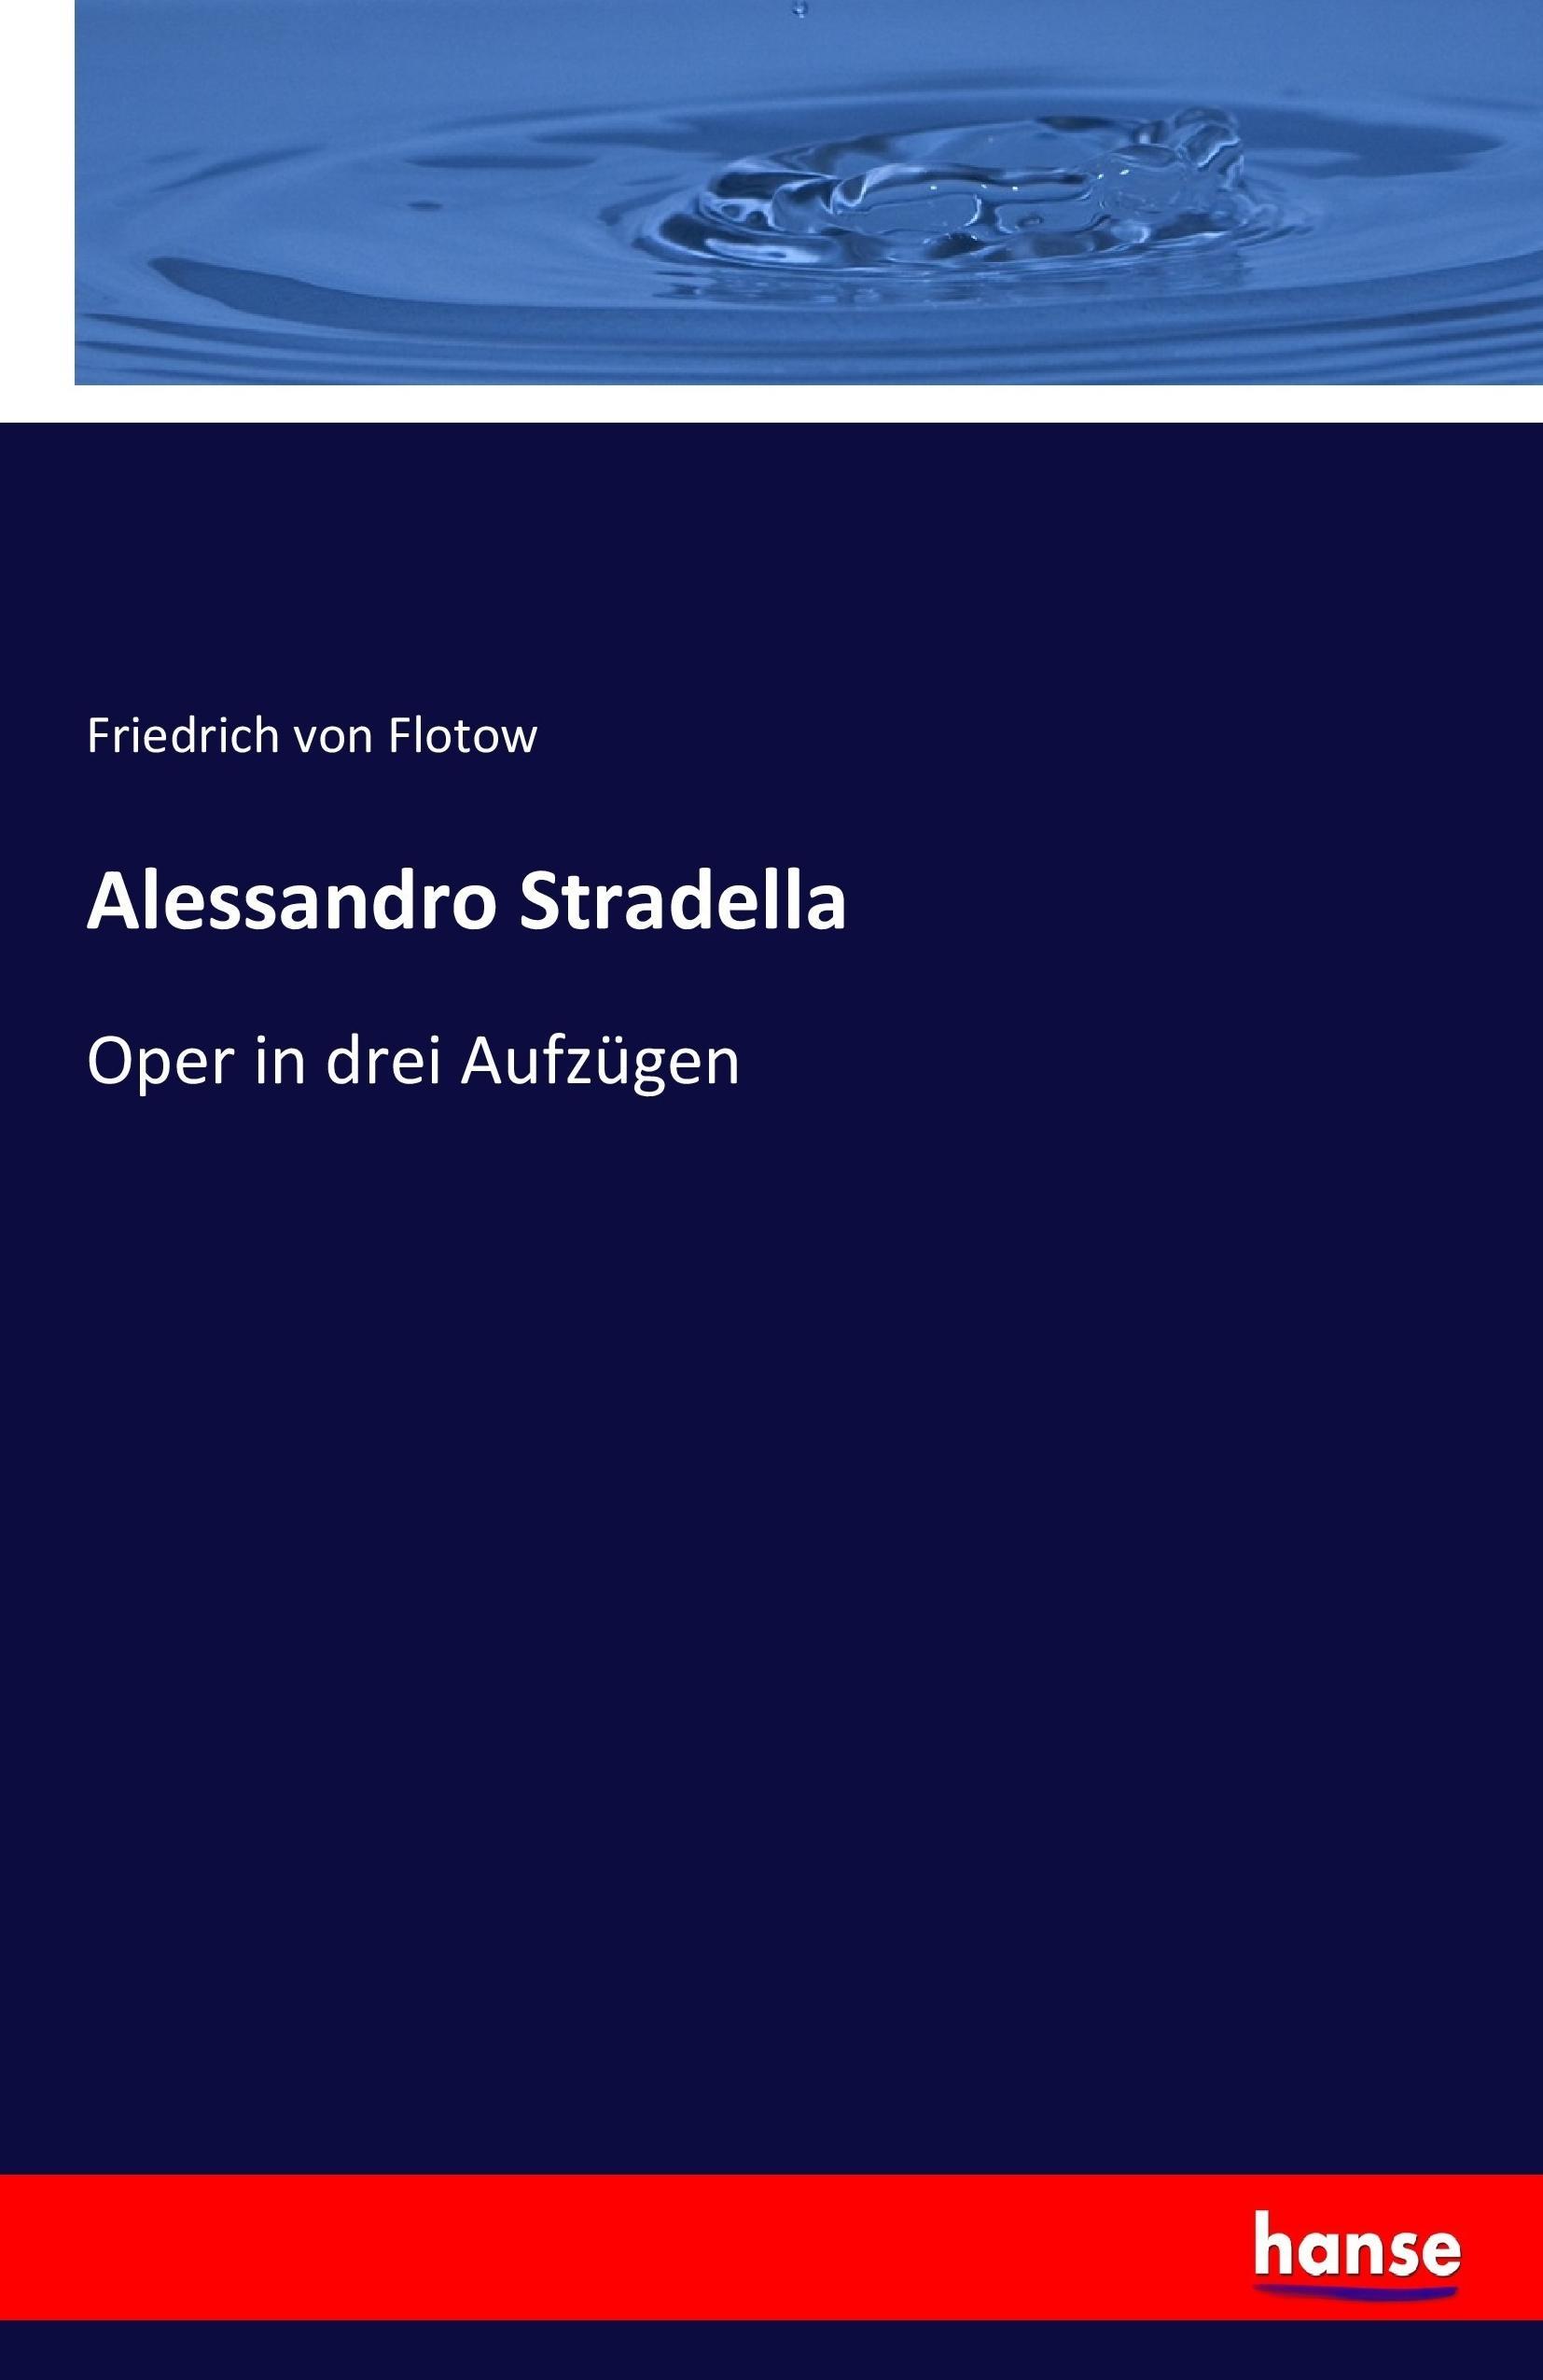 Alessandro Stradella - Flotow, Friedrich von